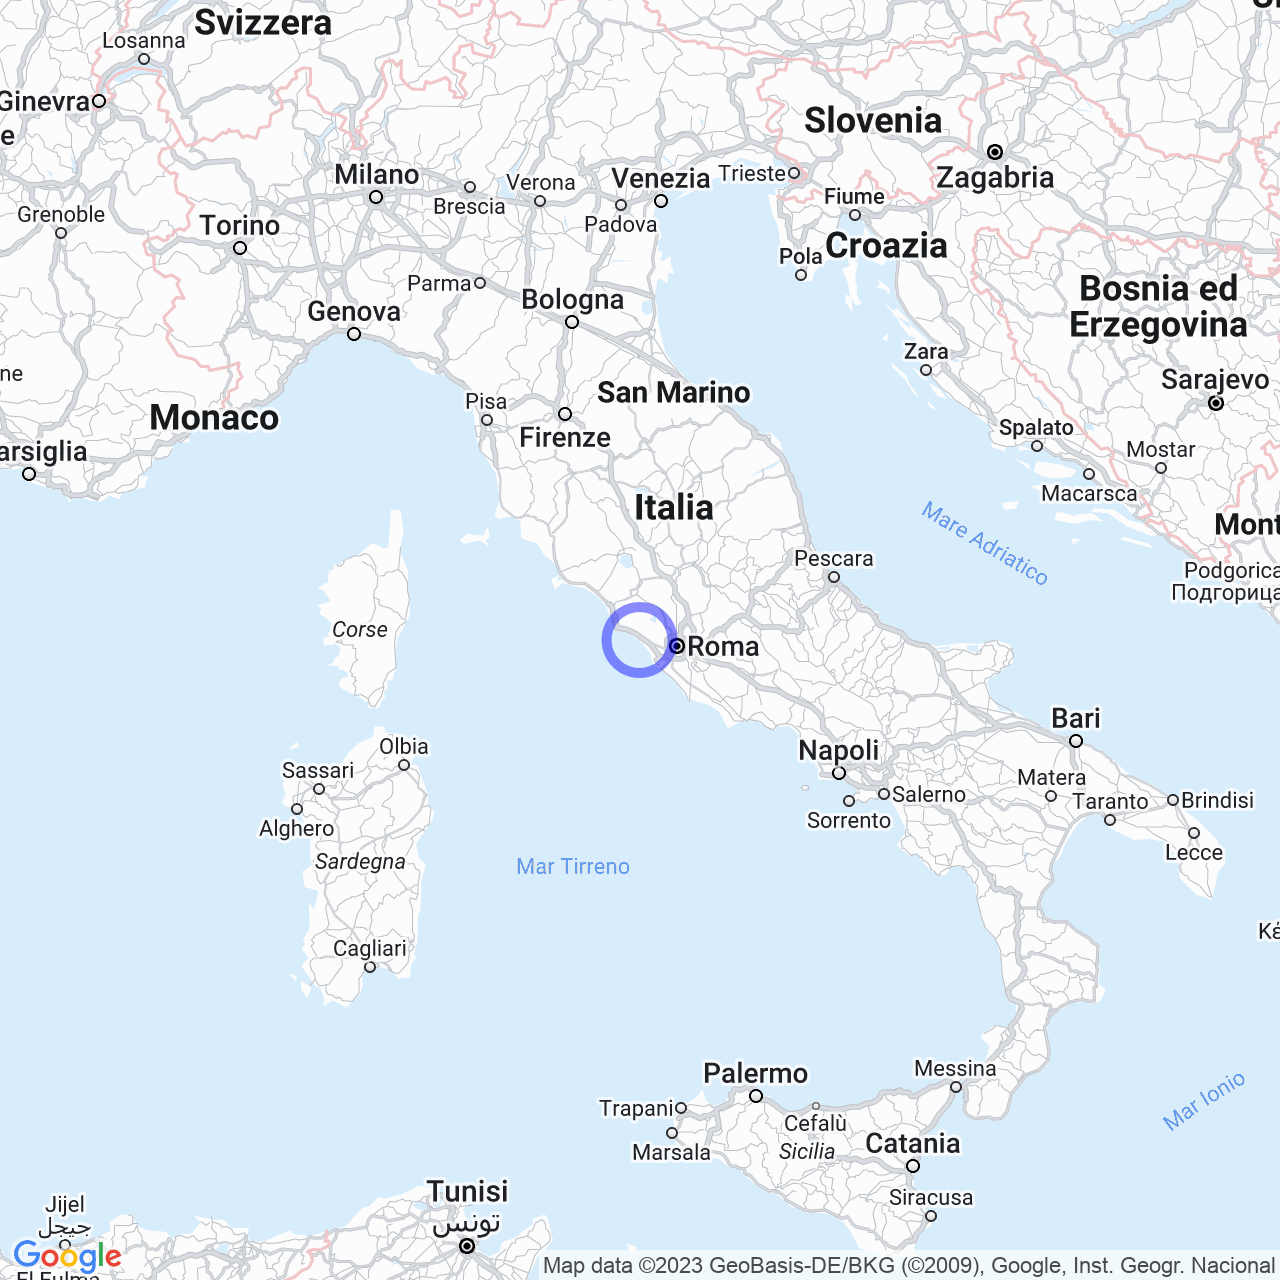 Ladispoli: the pearl of the northern Lazio coast